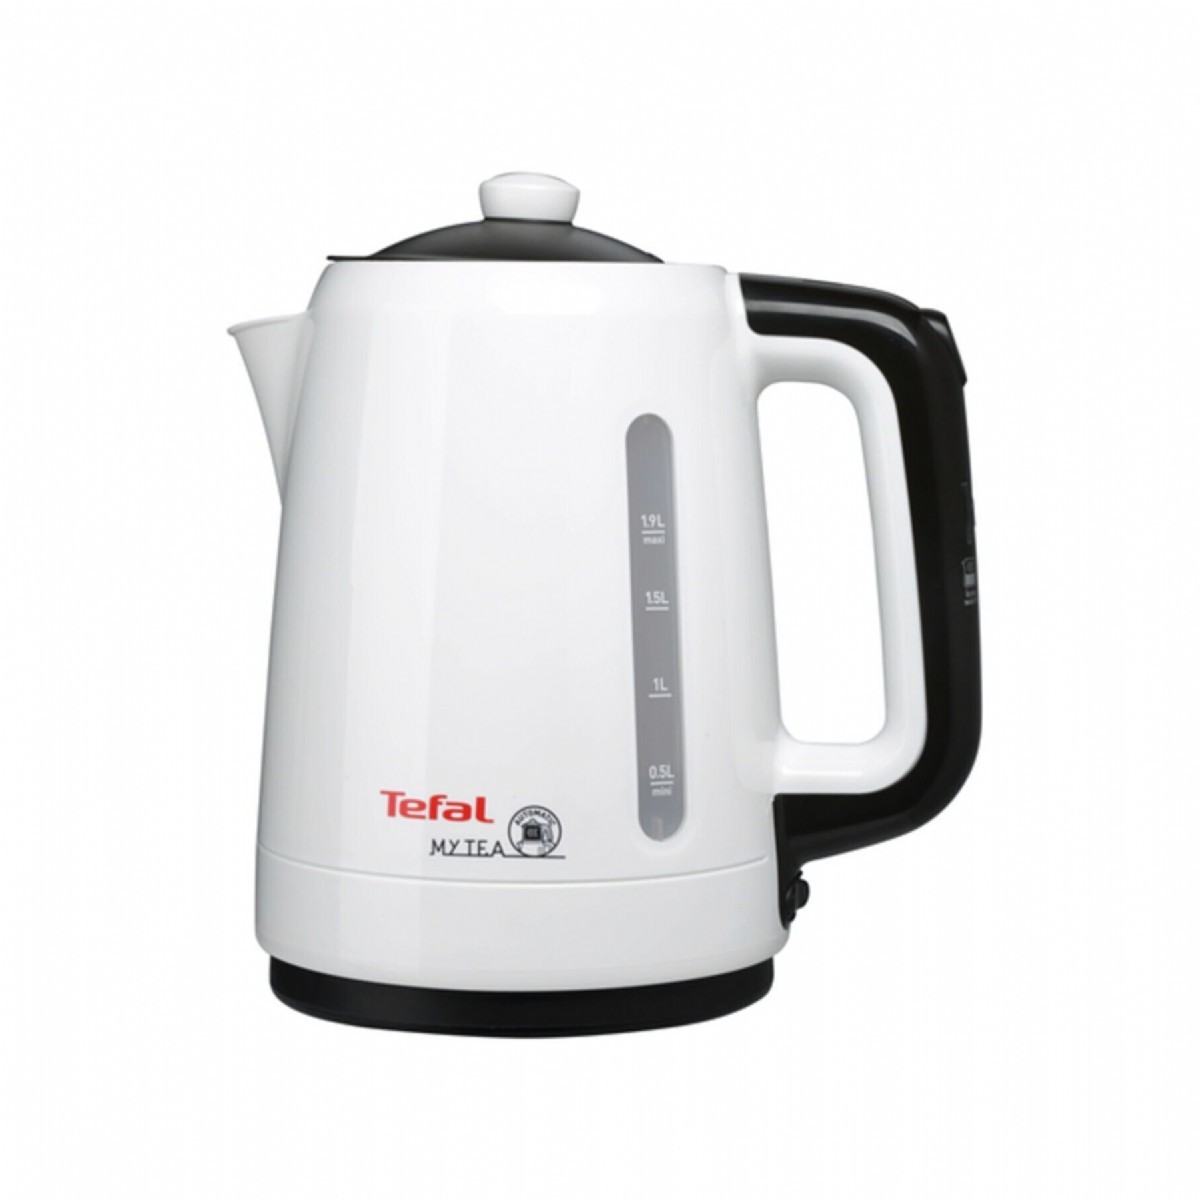 Çay Makineleri | Tefal My Tea Beyaz 1500 W Cam Demlikli Çay Makinesi | BJ201 | tefal mytea çay makinesi, çaycı, beyaz çaycı, tefal çaycı, beyaz tefal kettle, çaycım | 